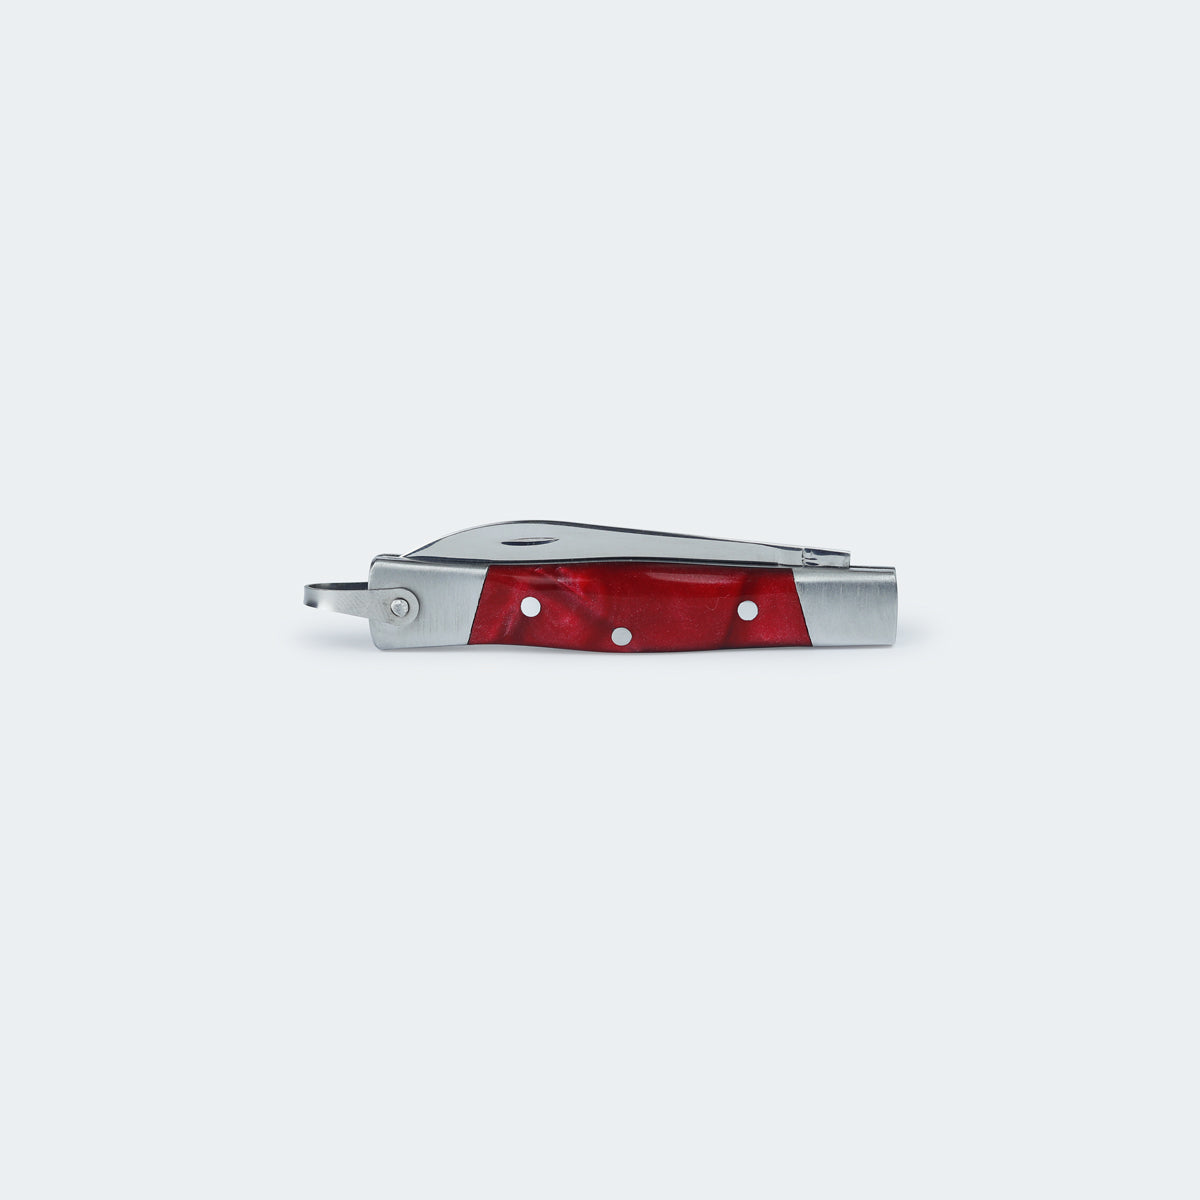 Canivete Cimo Inox Cabo Inox E Acrílico Vermelho Com Bainha - 330/6 I A C/B